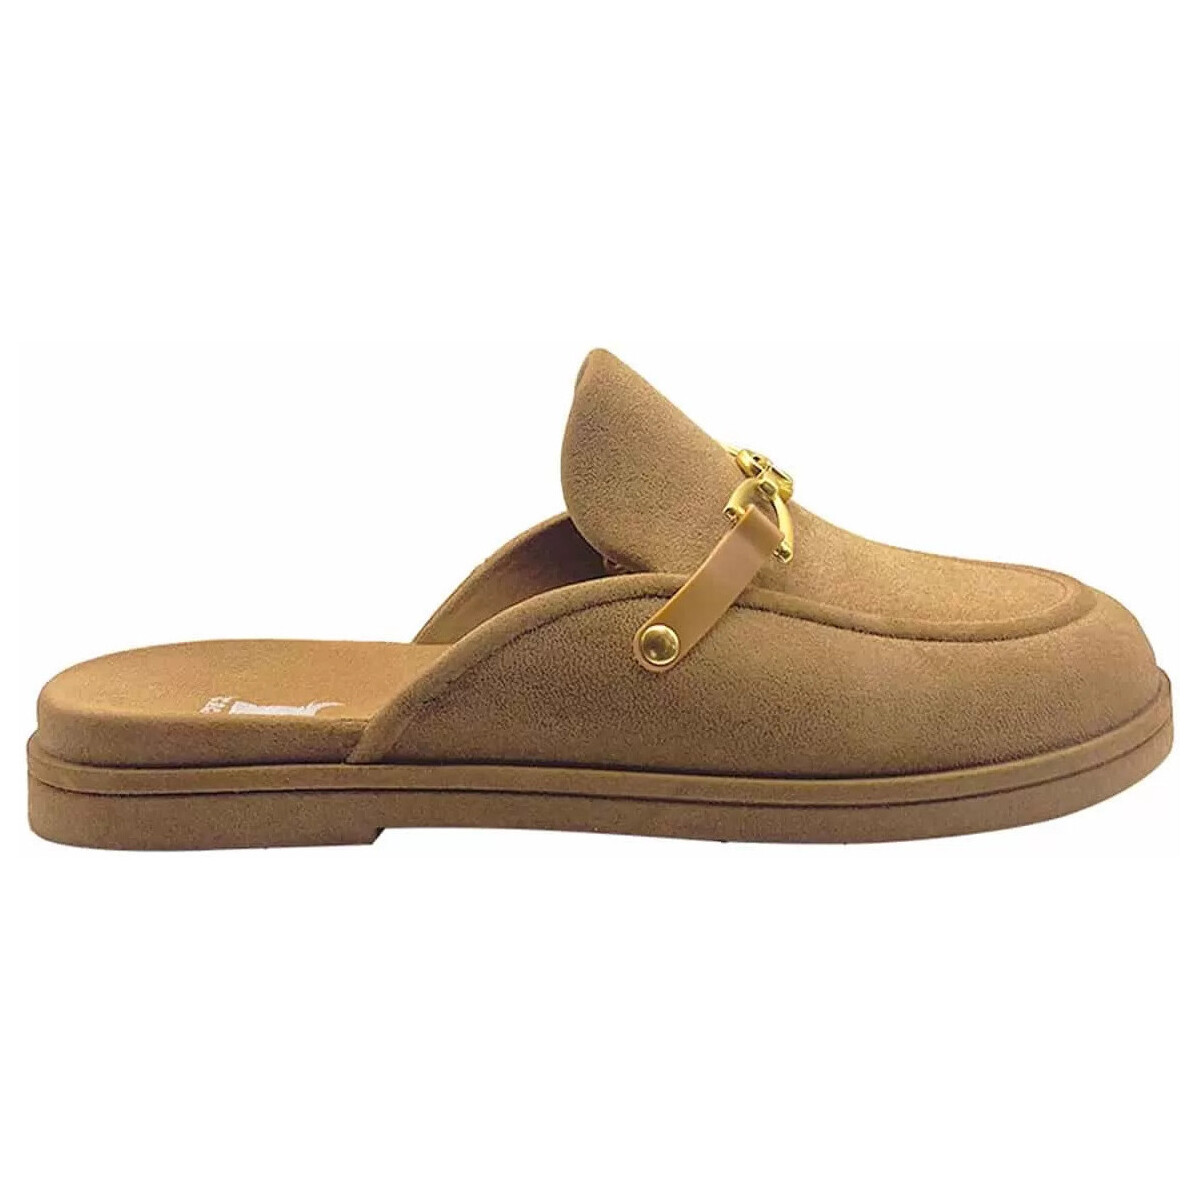 Chaussures Femme Sandales et Nu-pieds Cacatoès CAMPOS PEACH - VINTAGE CAMEL 06 / Camel - #B38855